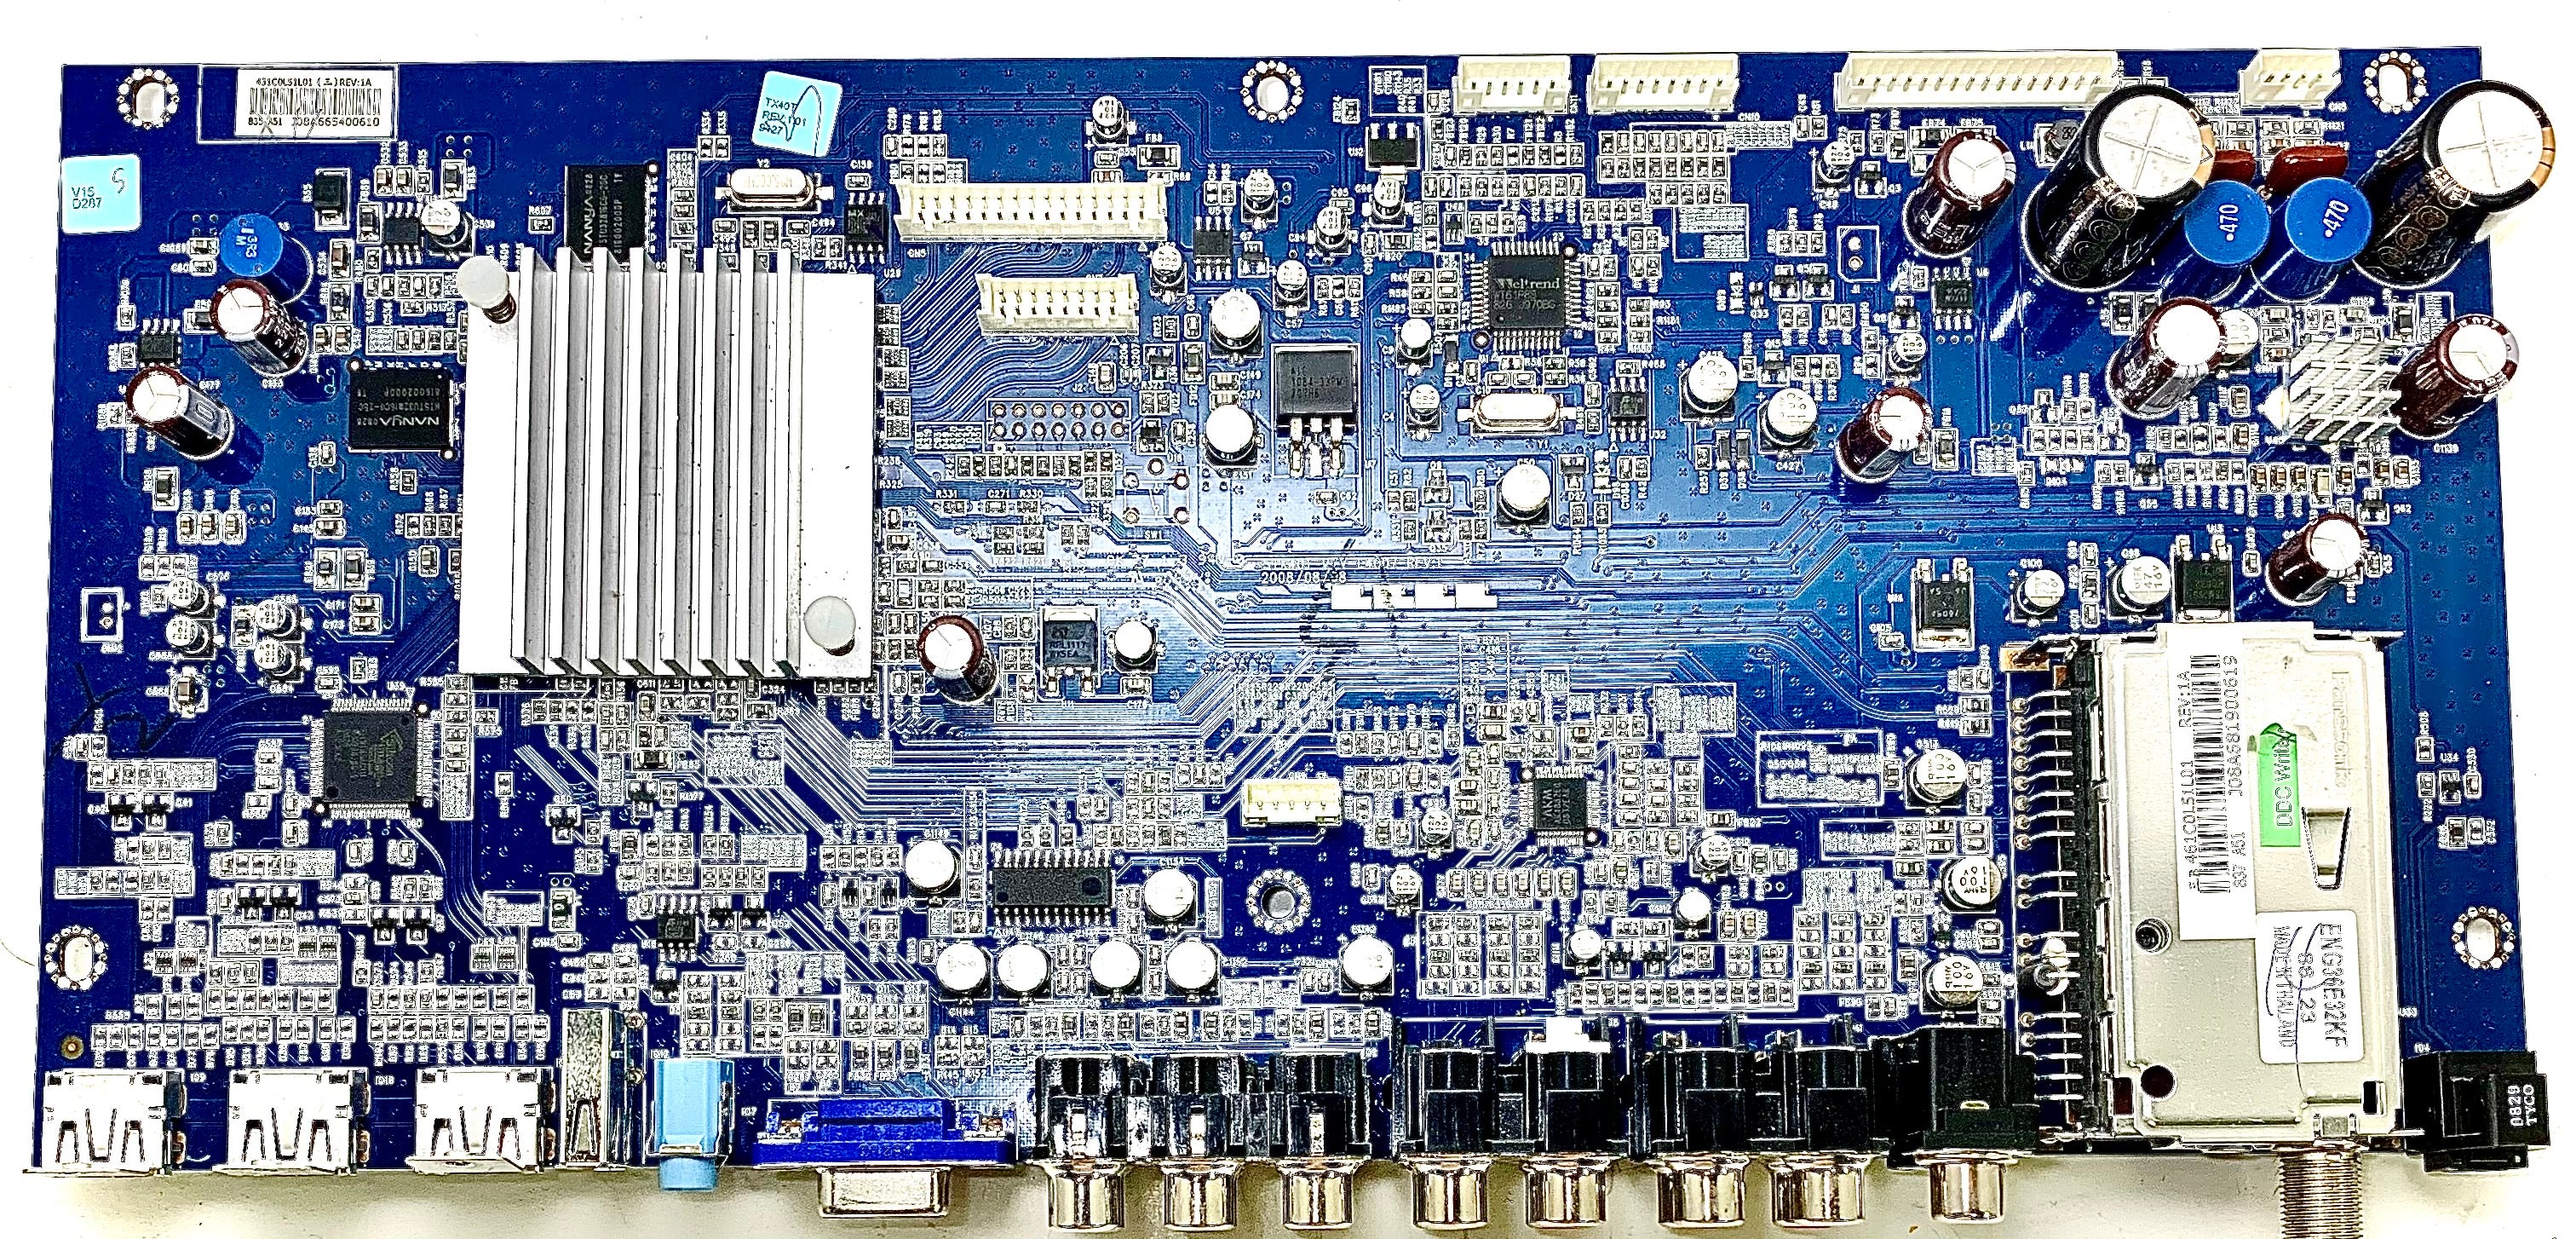 Toshiba 75013349 (STX40T, VTV-L4007, 431C0L51L01) Main Board